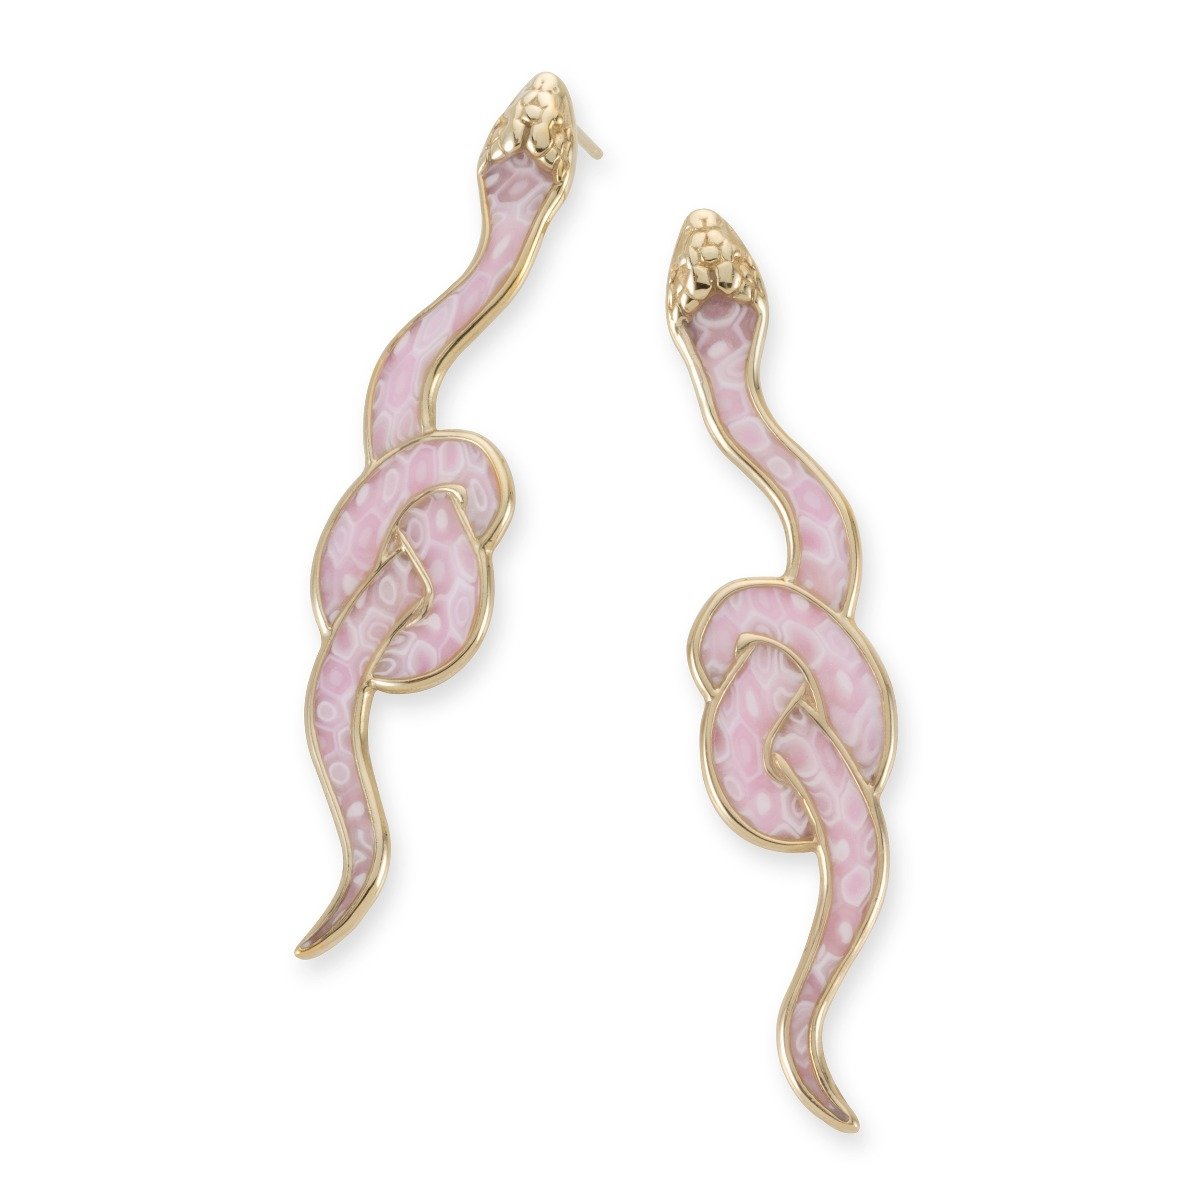 Adina Plastelina 24K Gold Plated Sterling Silver Stud Snake Earrings – Rose Quartz - 1